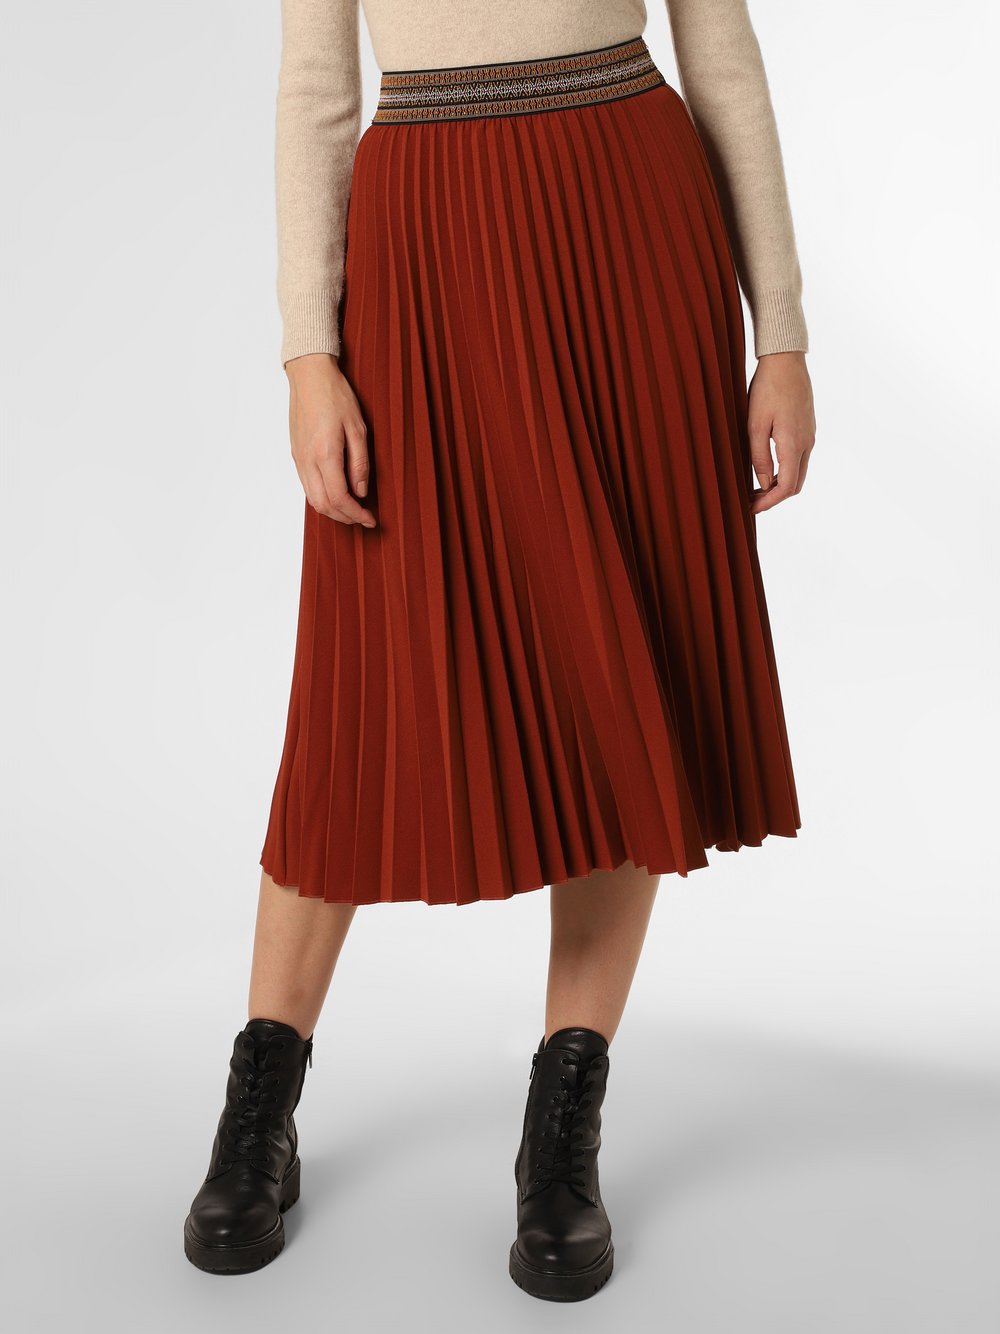 Zero - Spódnica damska, brązowy|czerwony